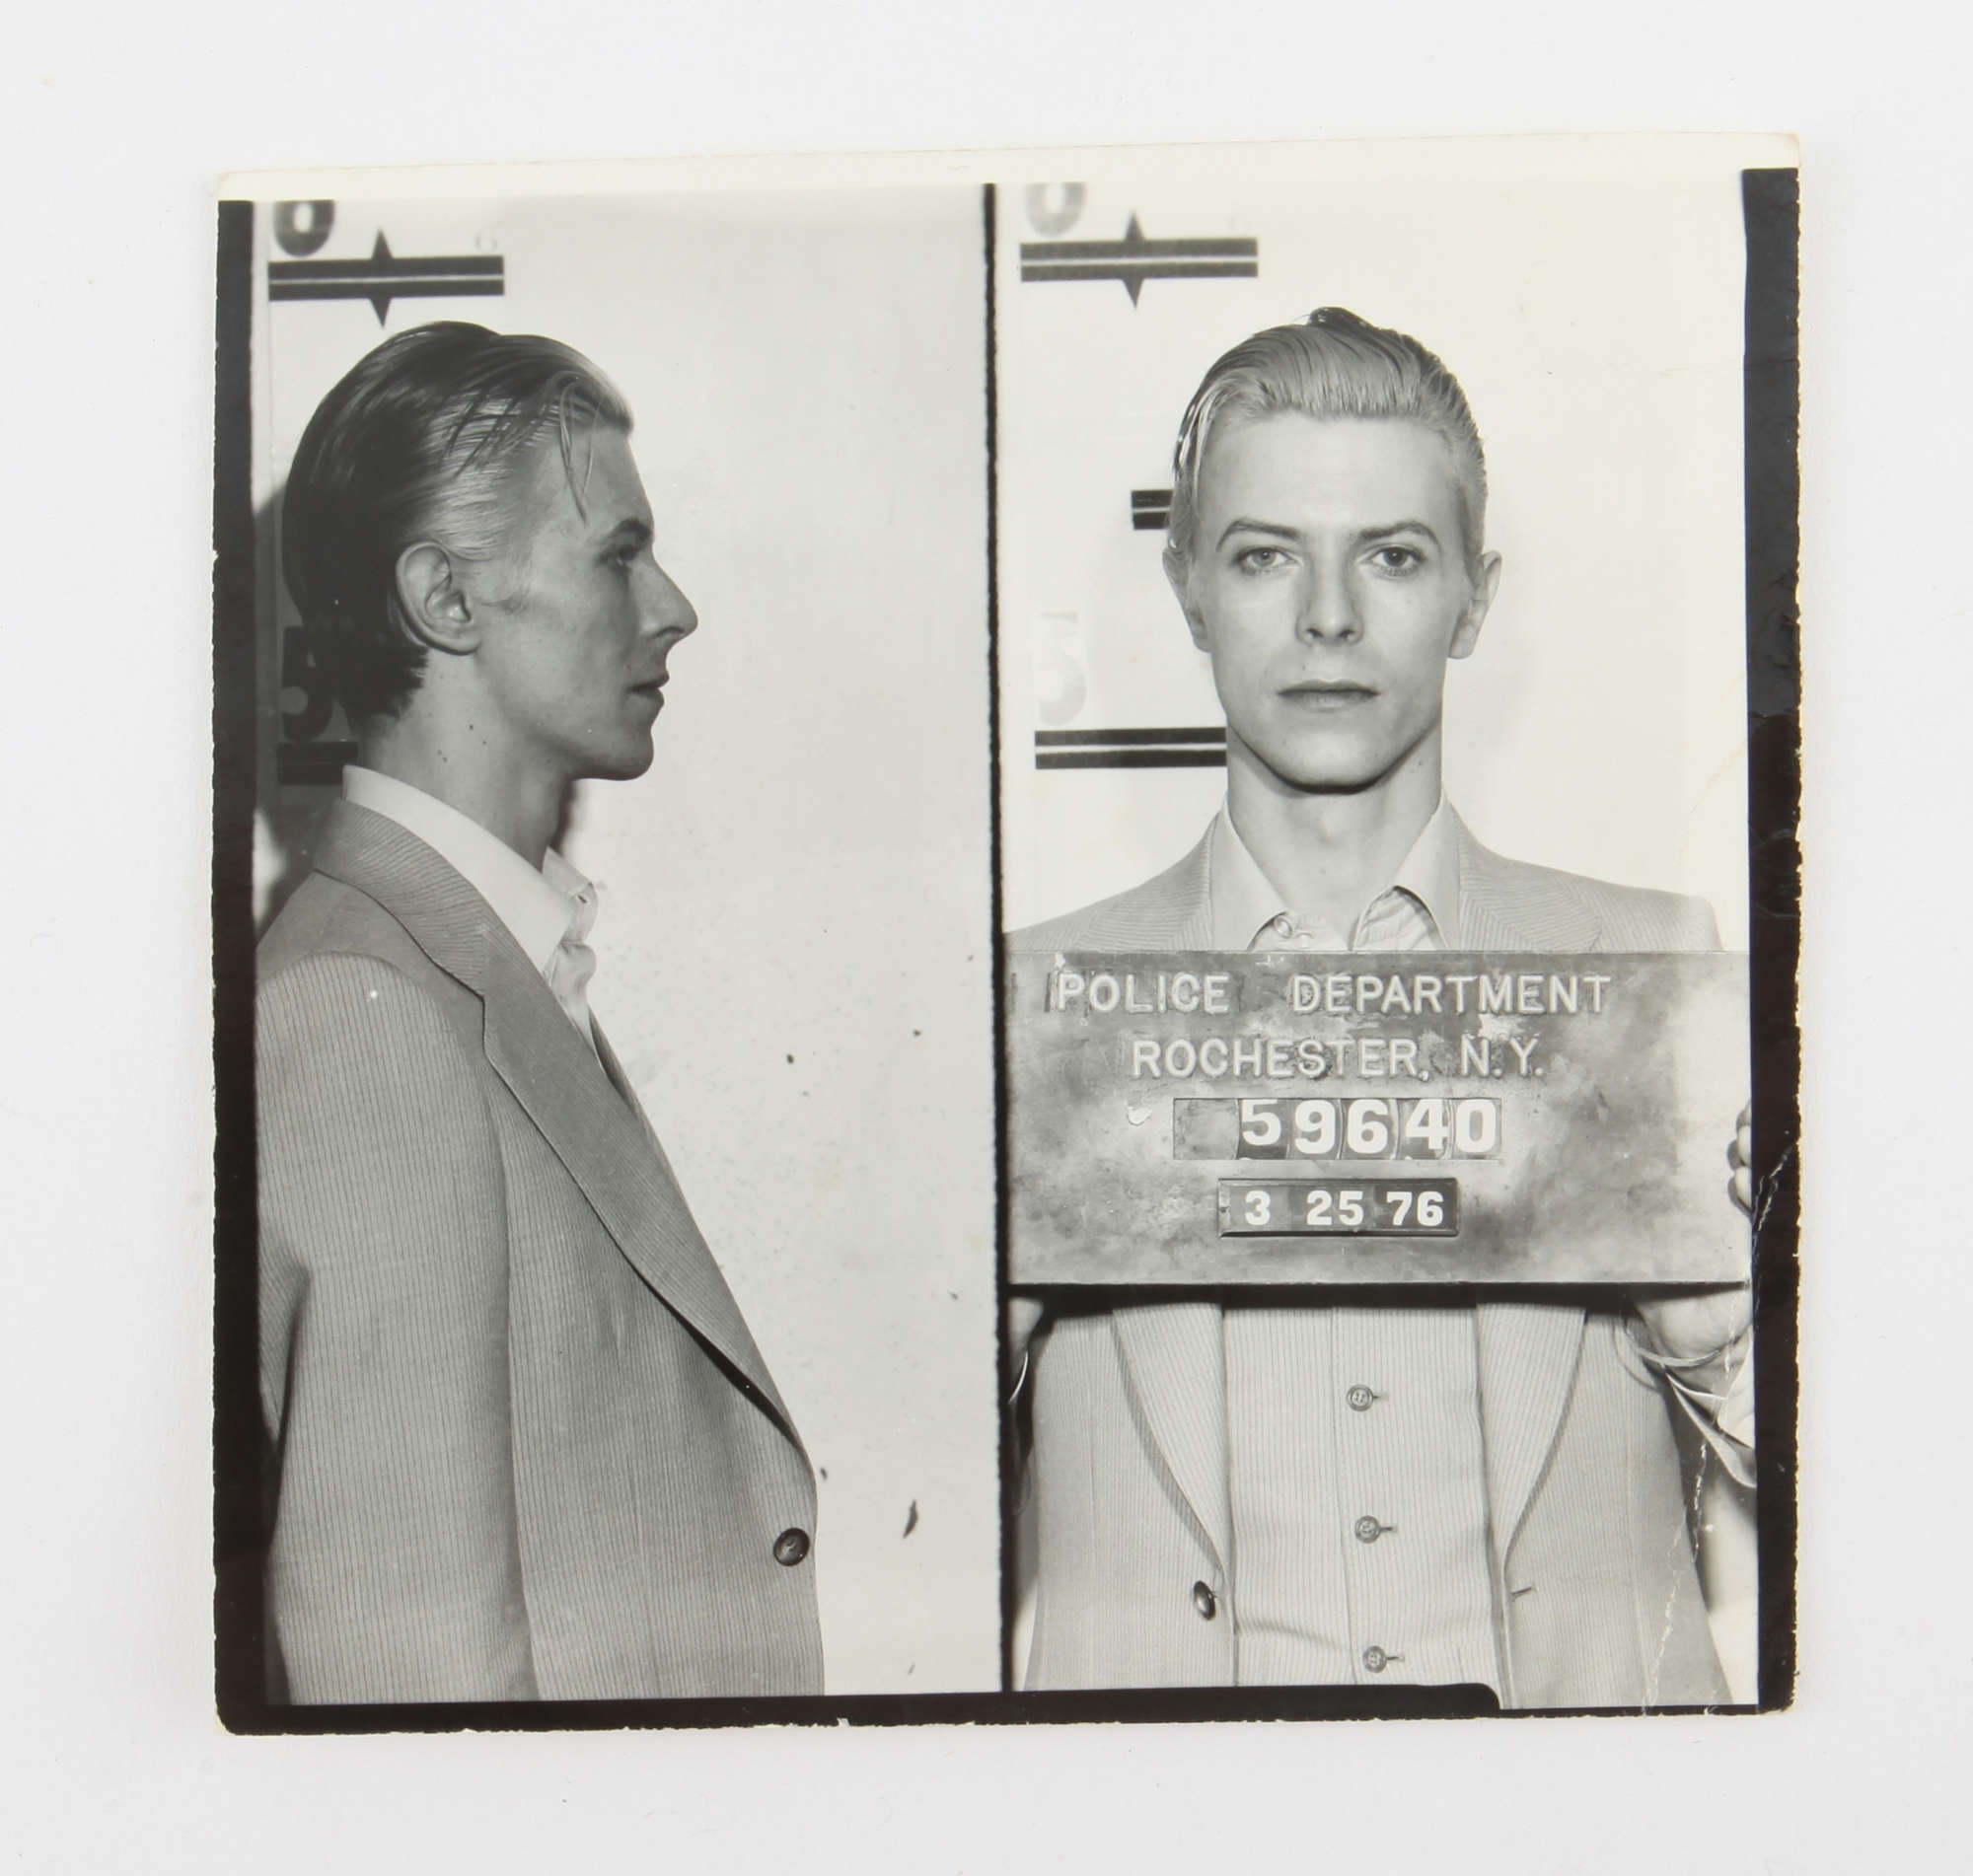 Η φωτογραφία από την σύλληψη του David Bowie το 1976 - CREDIT: Ewbank’s Auctions